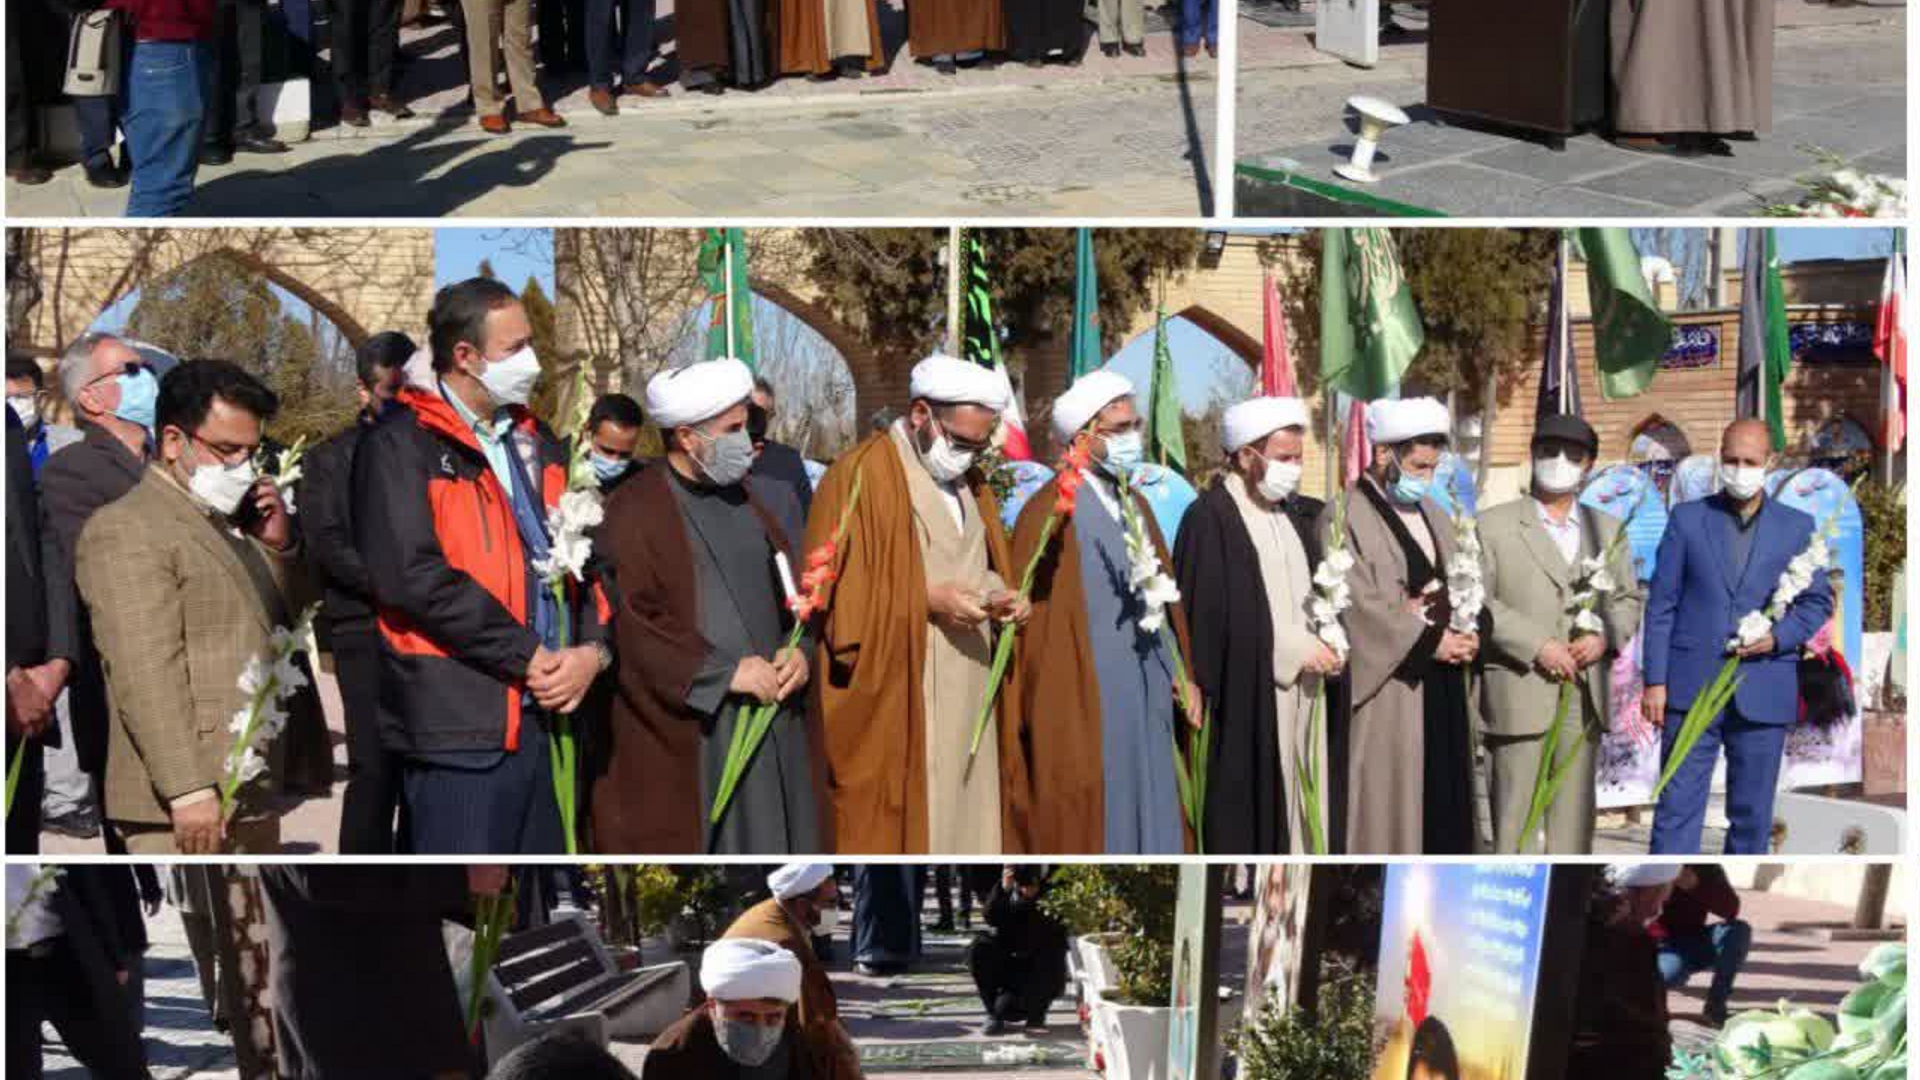 حضور در مراسم تجدید میثاق دانشگاهیان استان مرکزی با شهدا و آرمان های انقلاب اسلامی